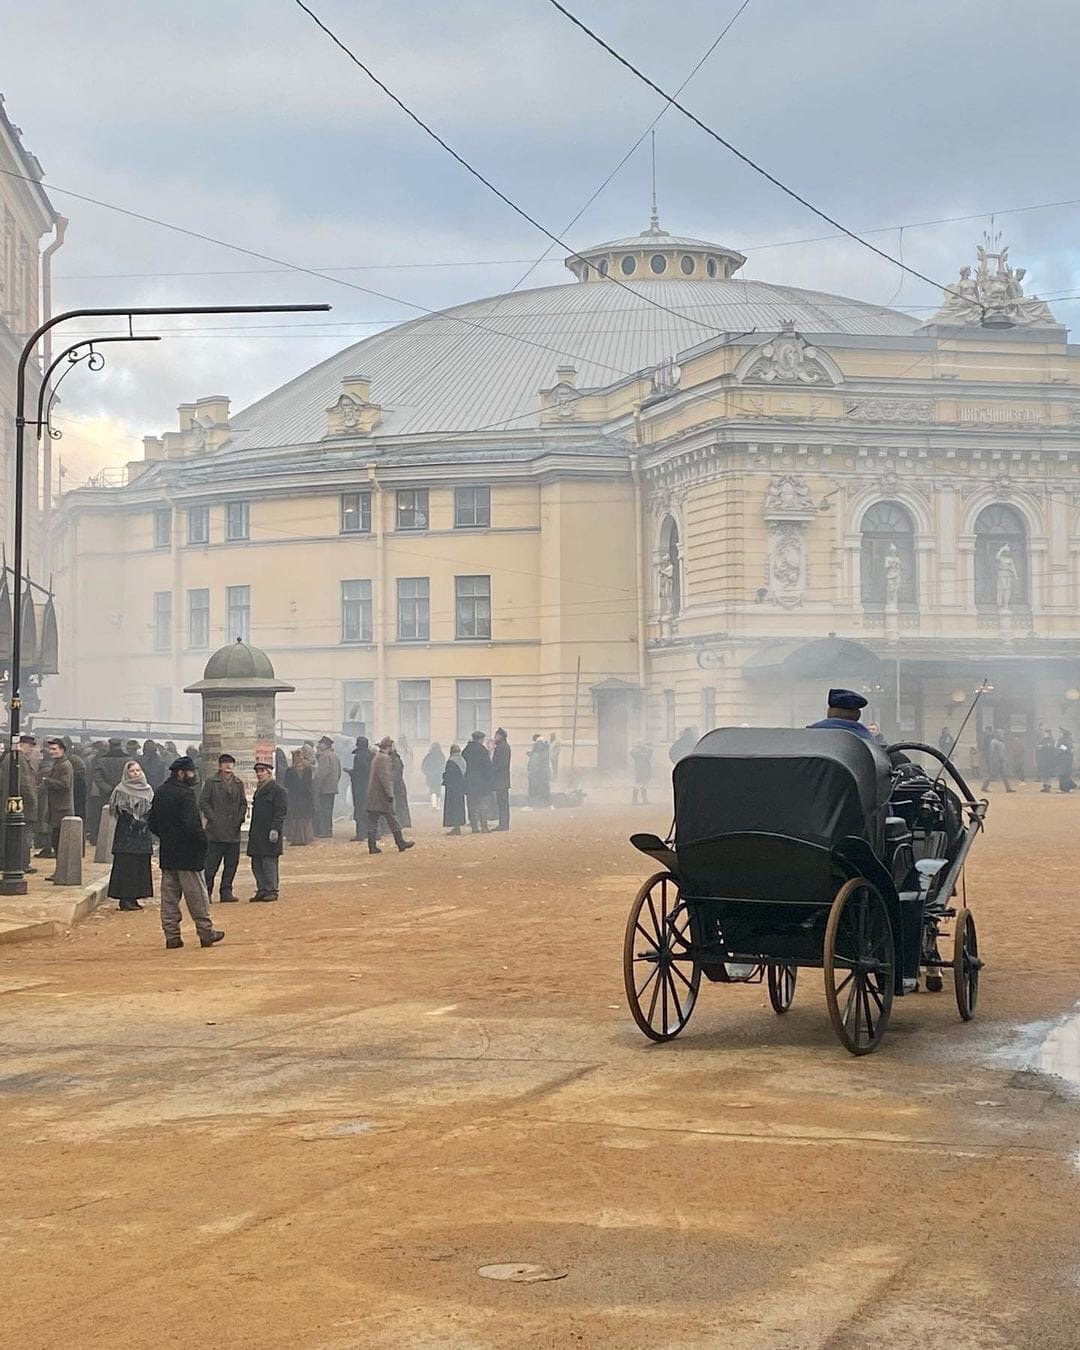 Красота из прошлого века - в Петербурге проходили сьемки фильмаа